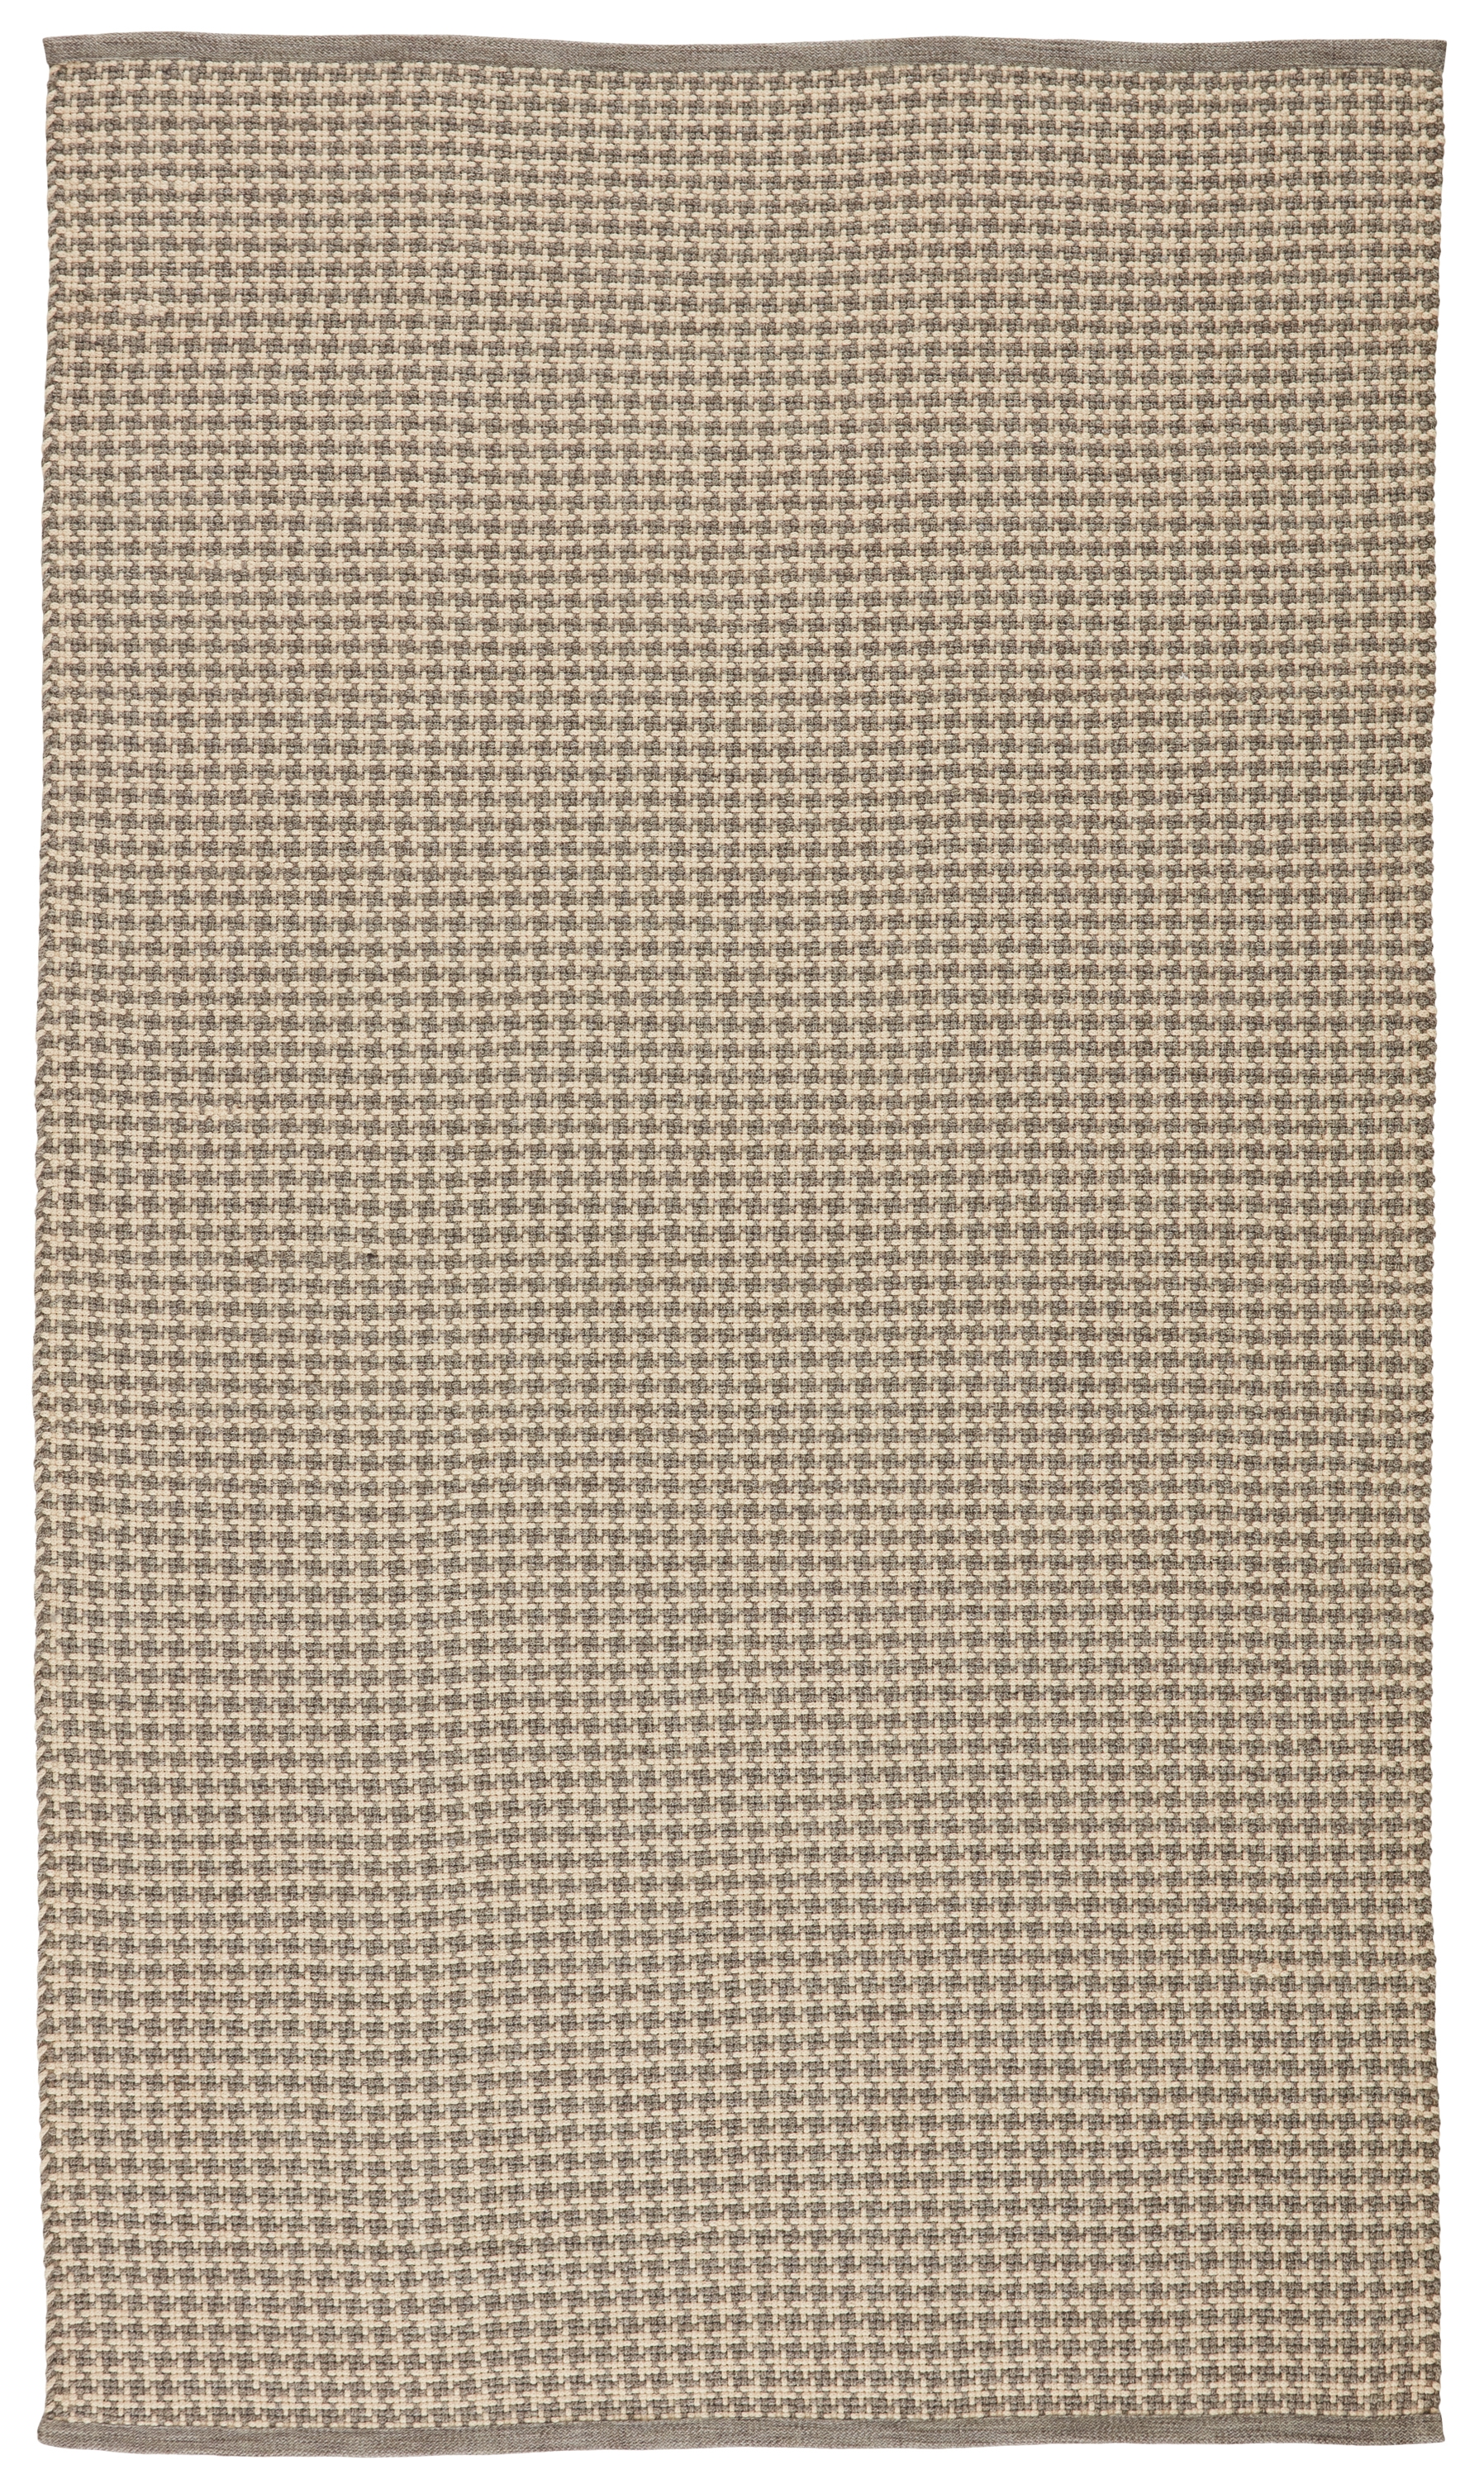 Houndz Indoor/ Outdoor Trellis, Light Gray & Cream, 5' x 8' - Image 0